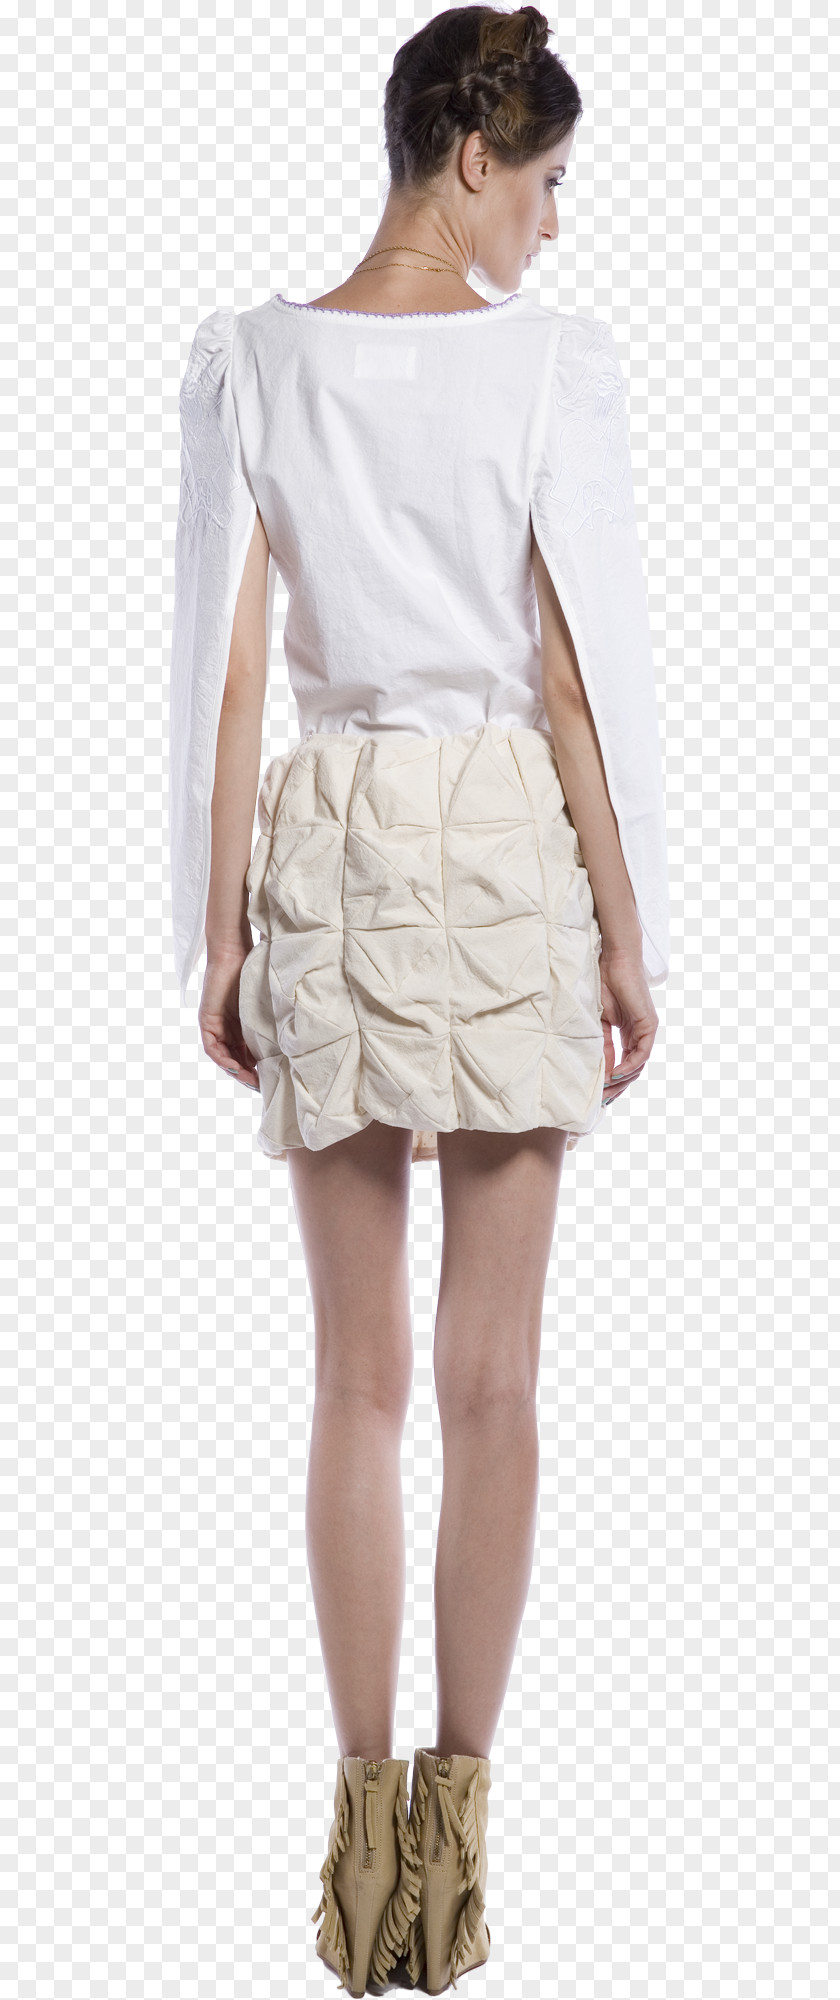 Dimensional Effect 2018 Fashion Shoulder Skirt Costume Beige PNG